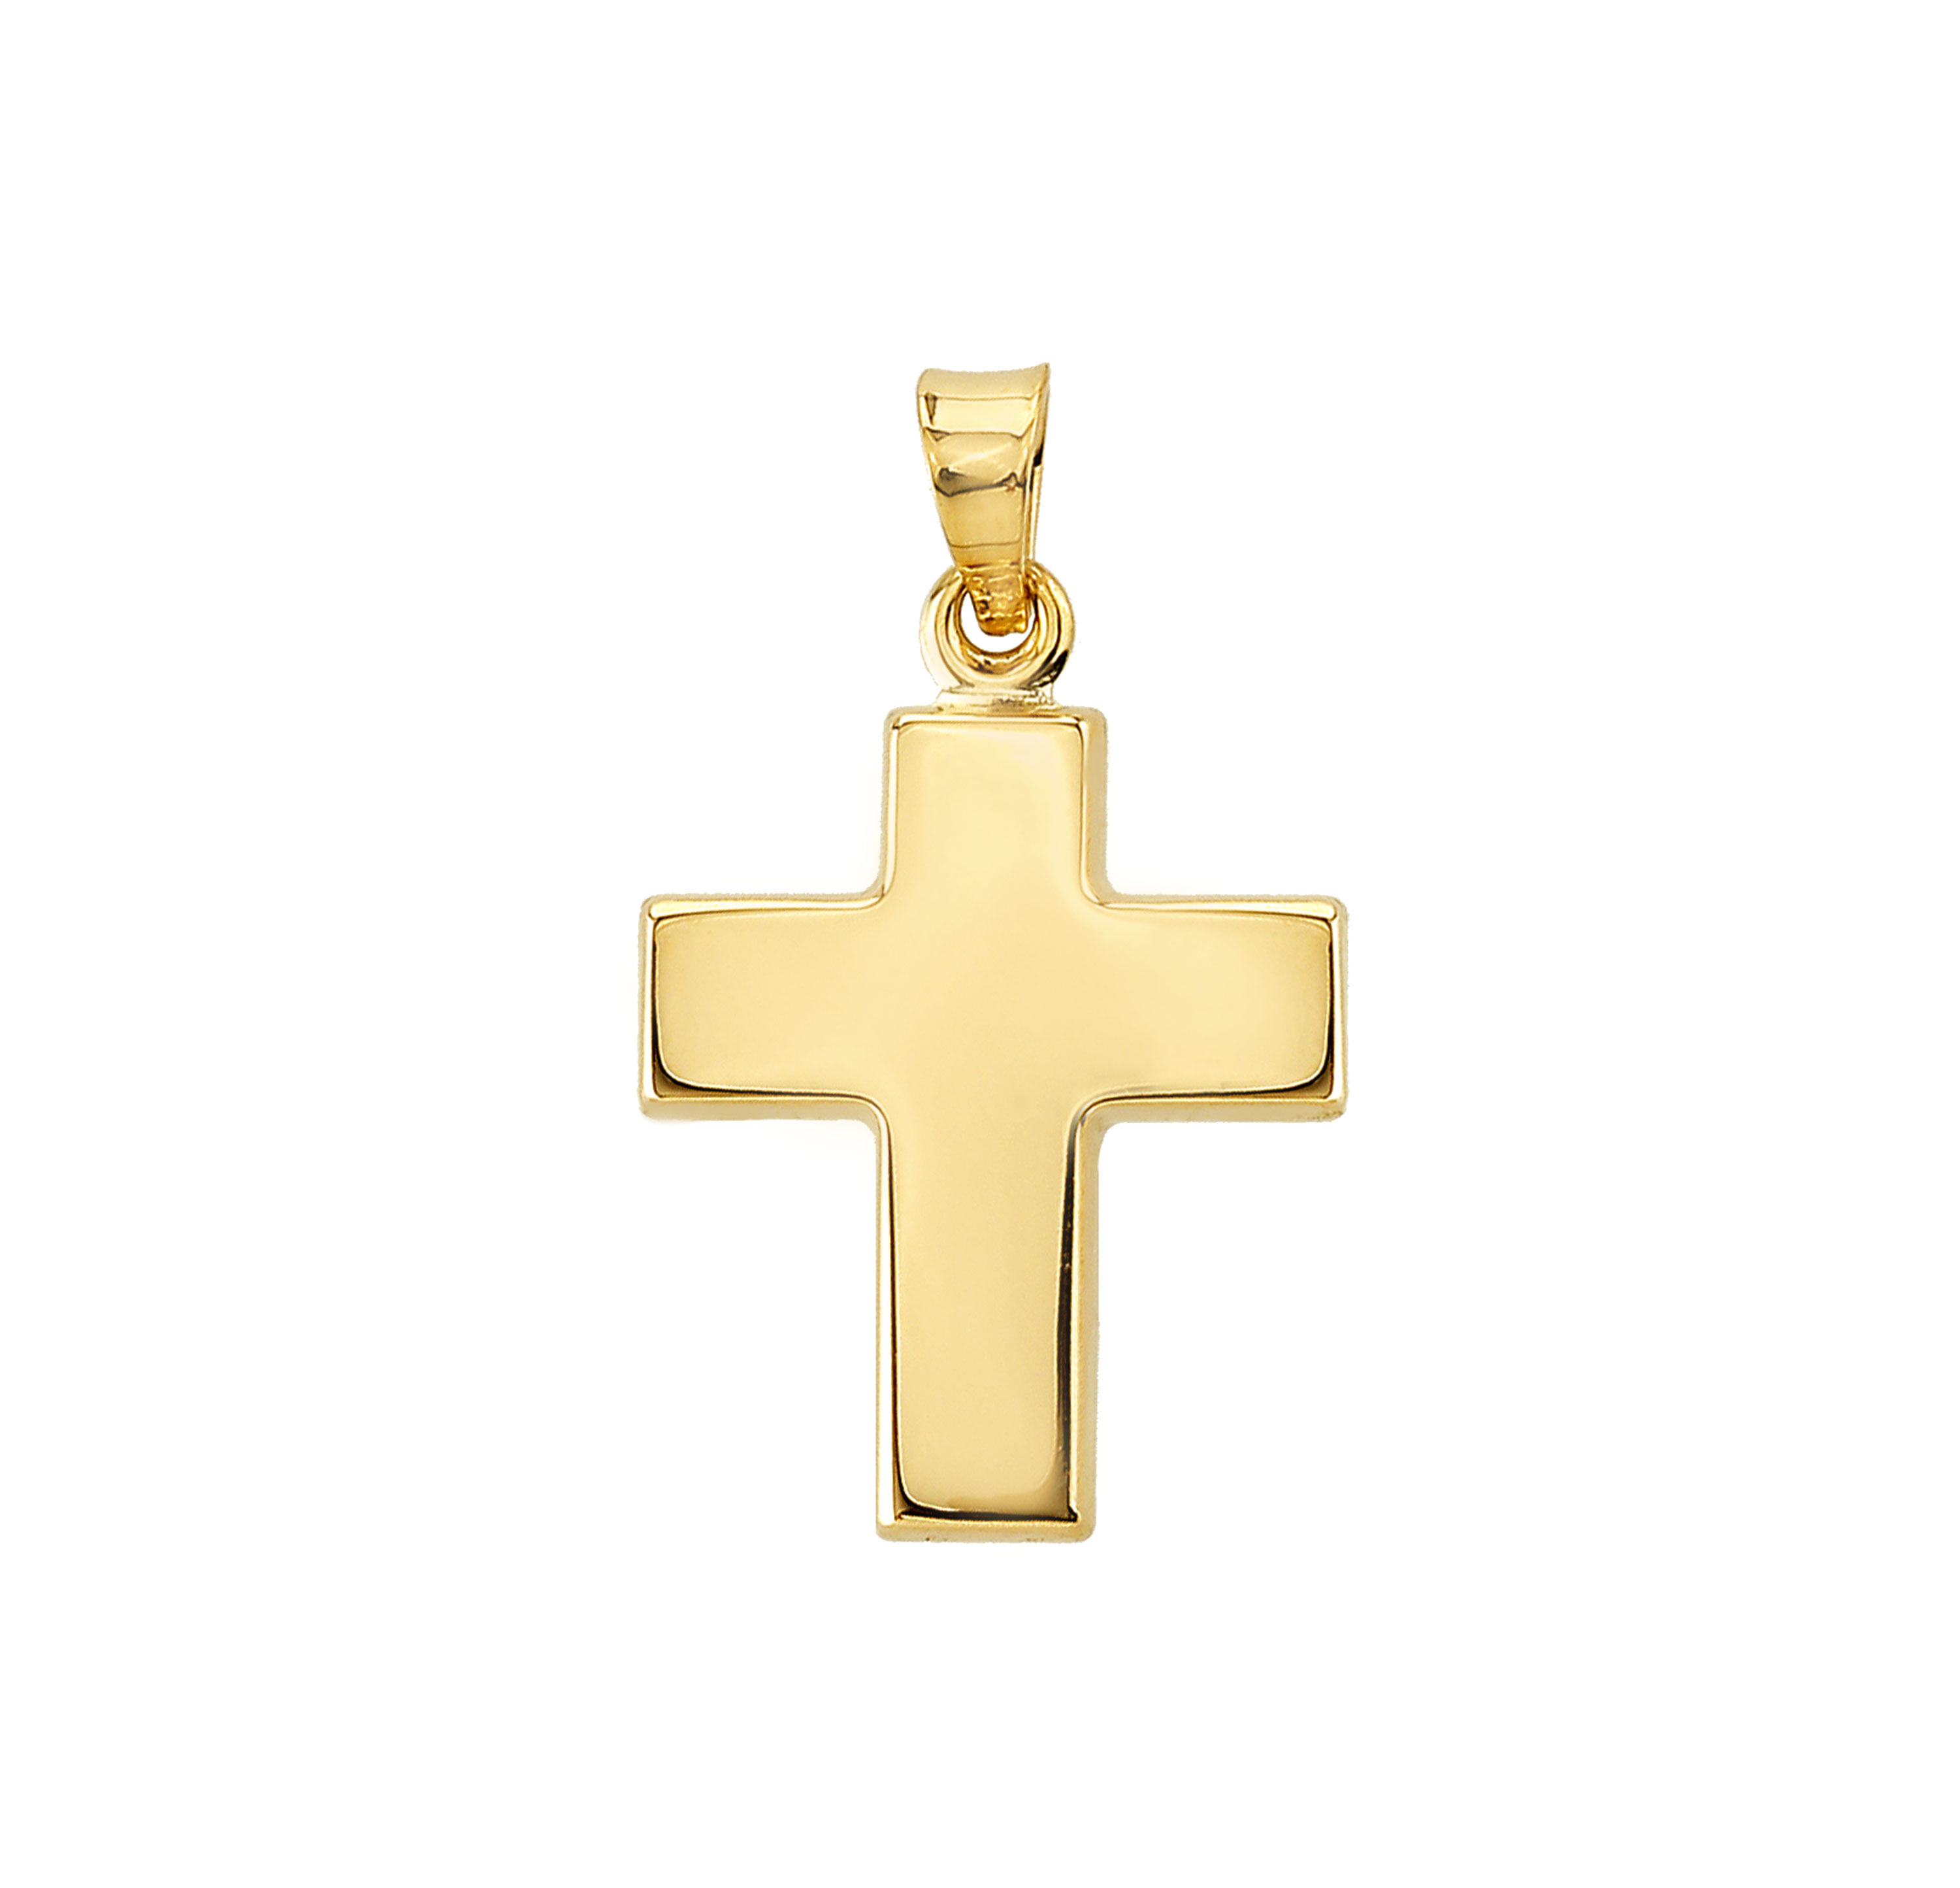 Goldanhänger Kreuz in 375 Gelbgold 8137